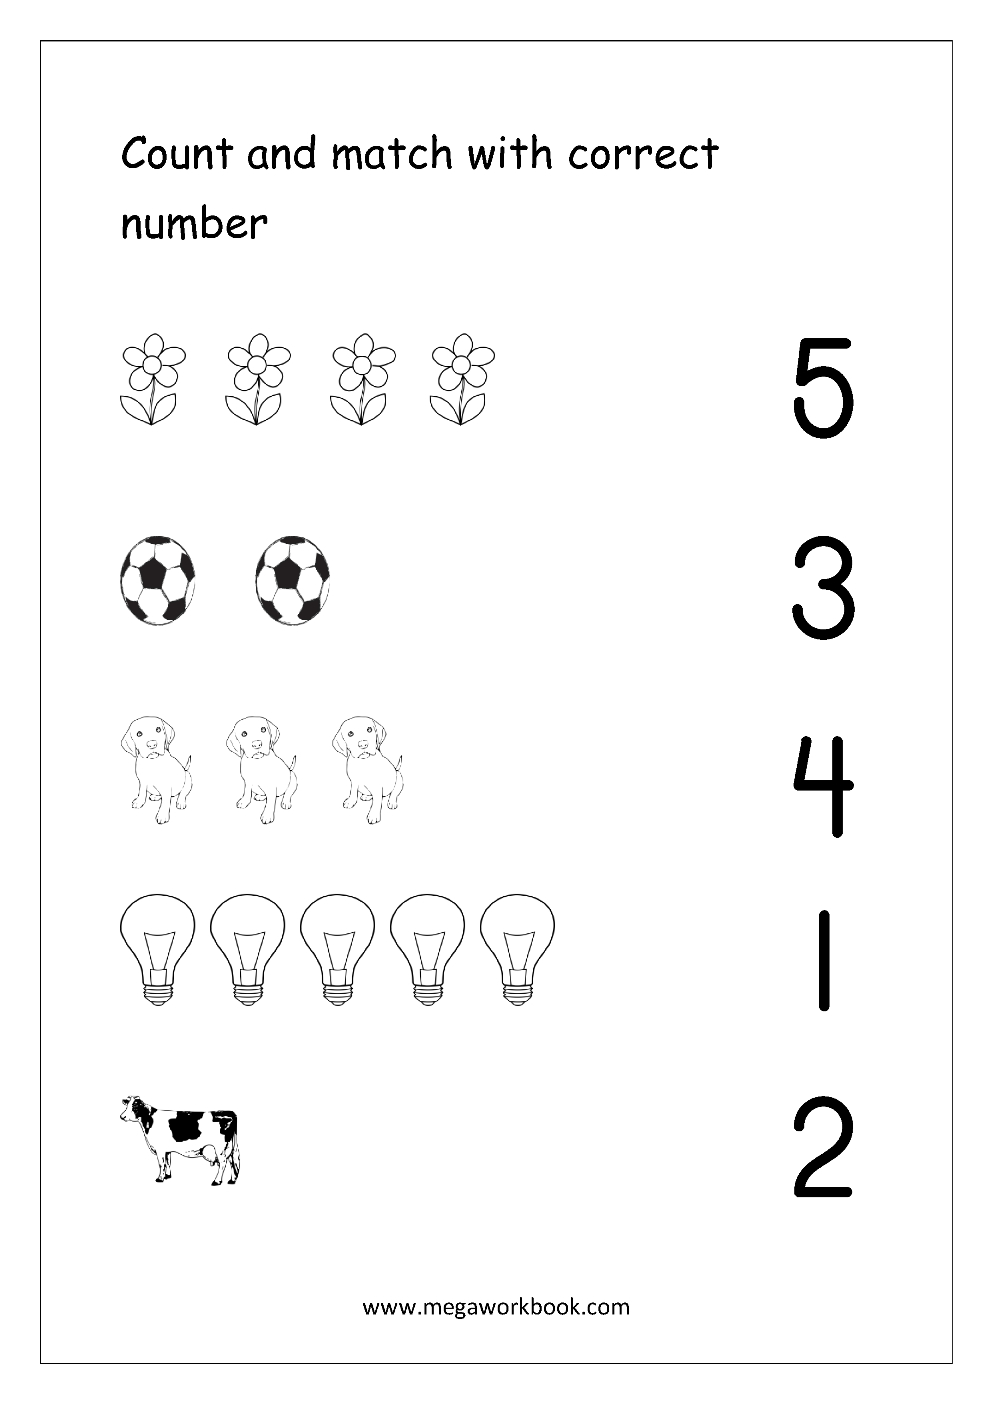 Free Printable Number Matching Worksheets For Kindergarten And | Free Printable Number Worksheets For Kindergarten